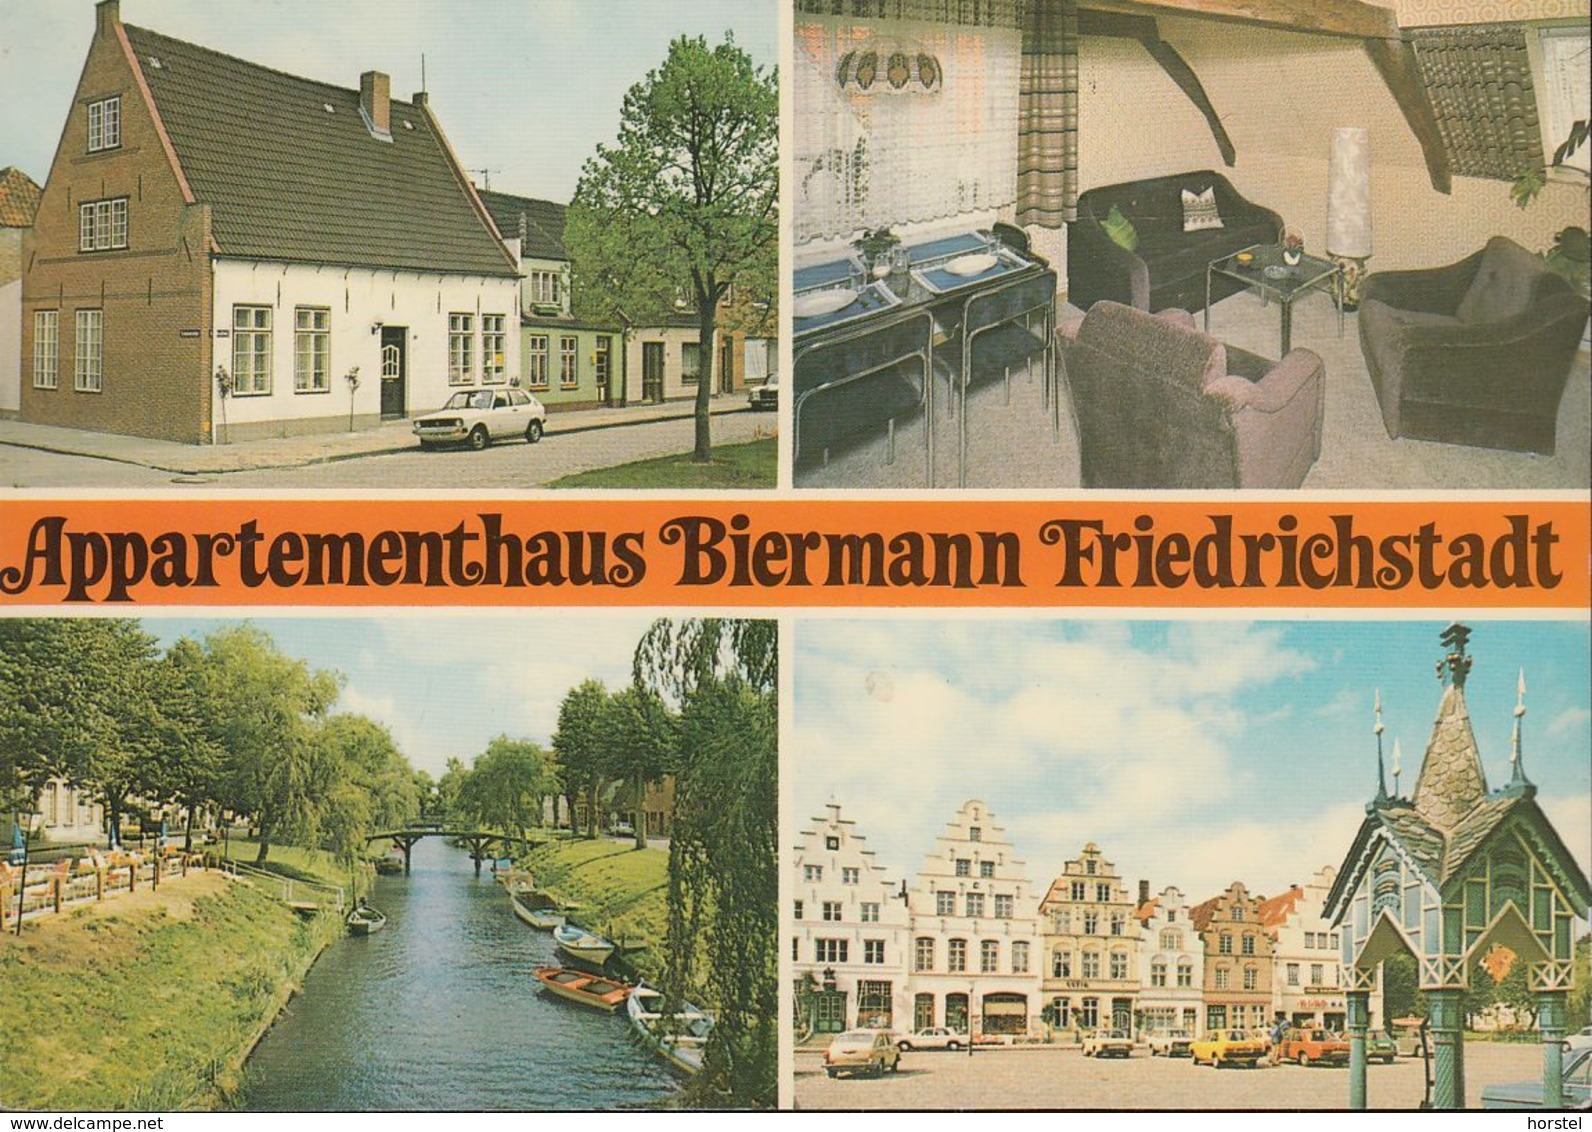 D-25840 Friedrichstadt - Appartmenthaus "Biermann" - Cars - VW 1500 - St. Peter-Ording